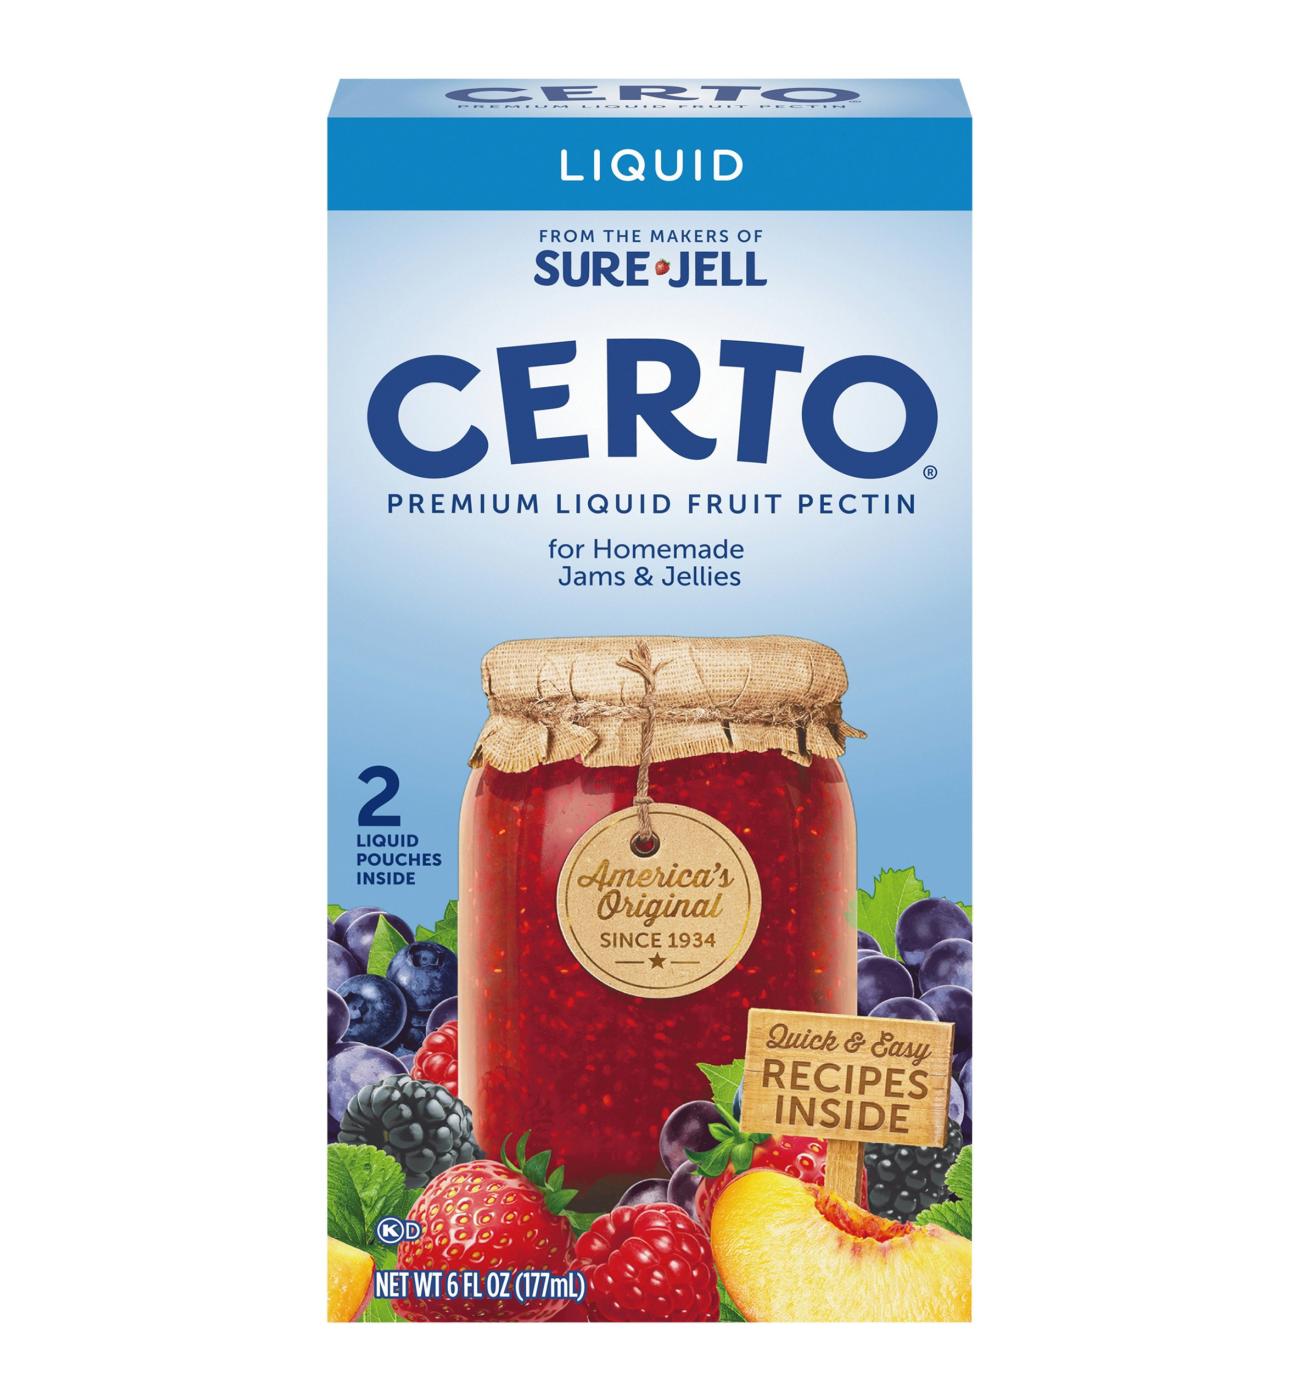 Certo Premium Fruit Pectin Box-Liquid; image 1 of 2